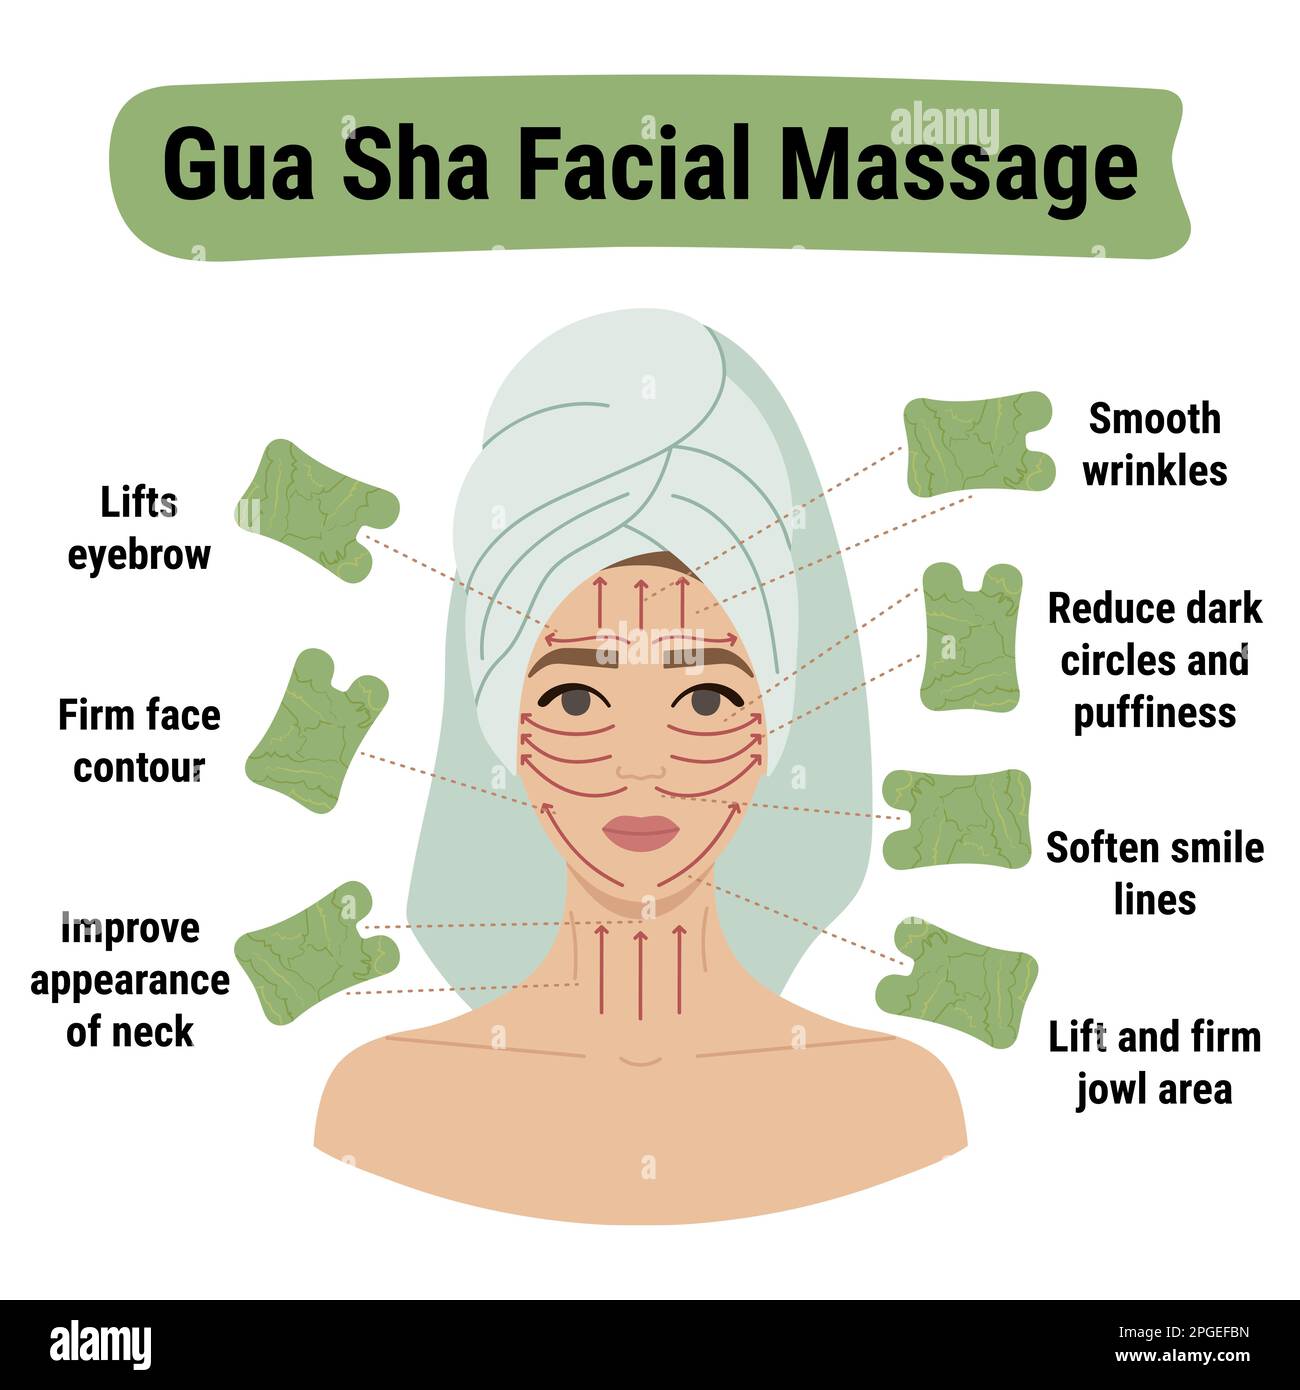 Massaggio facciale e i benefici del Gua Sha